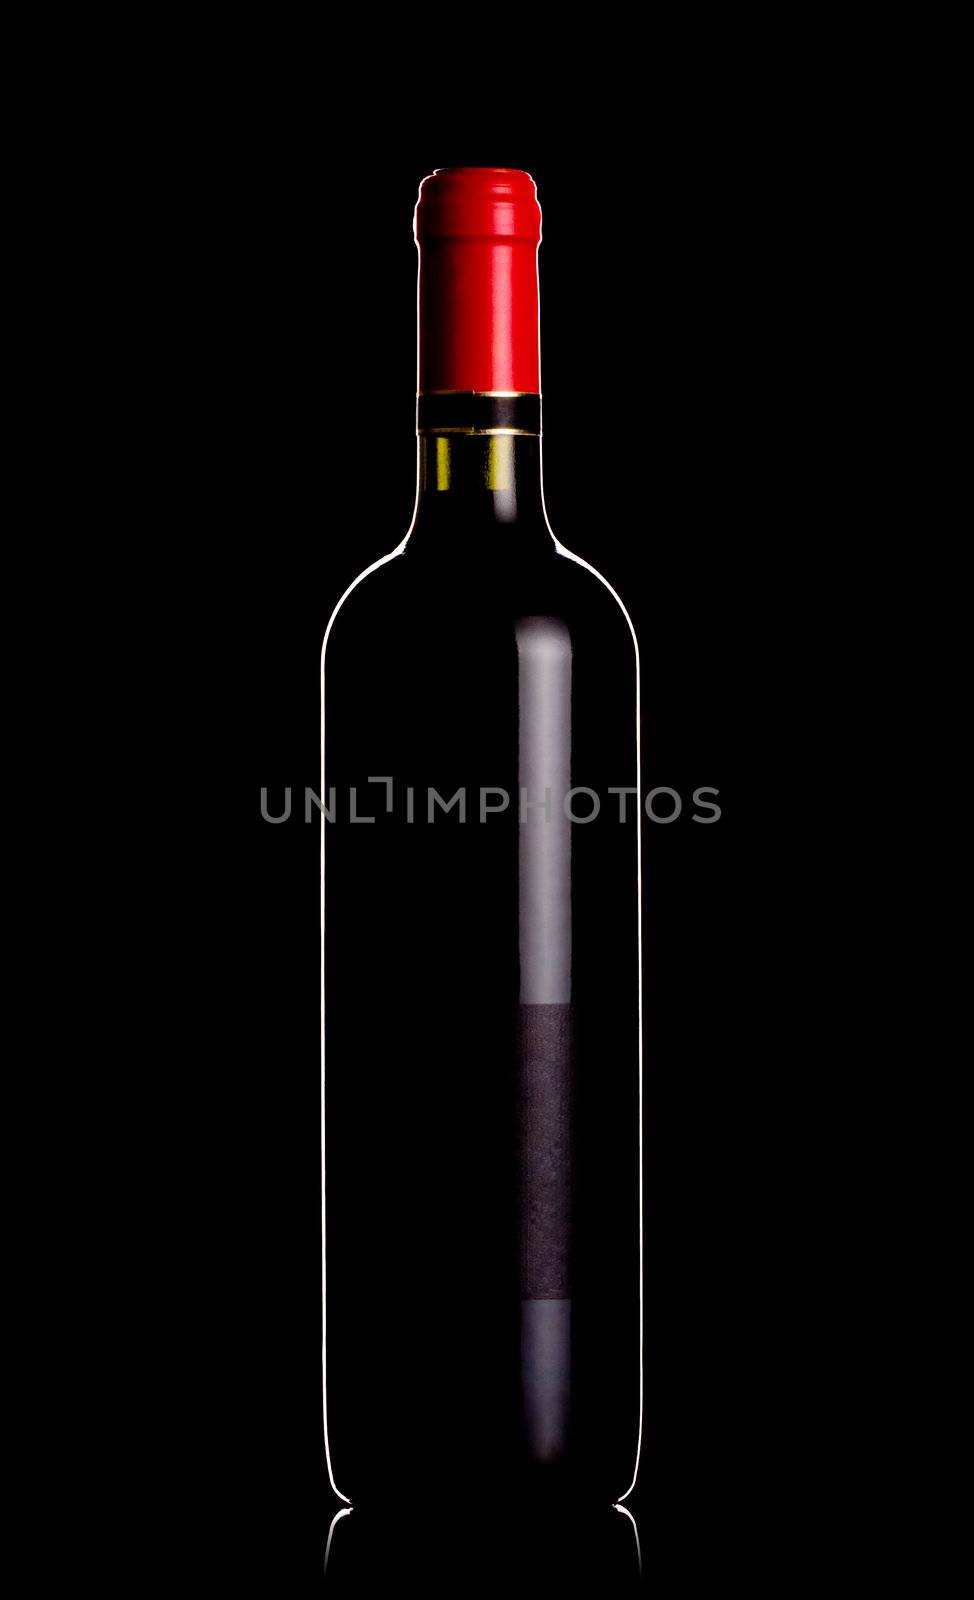 backlit wine bottle by kokimk